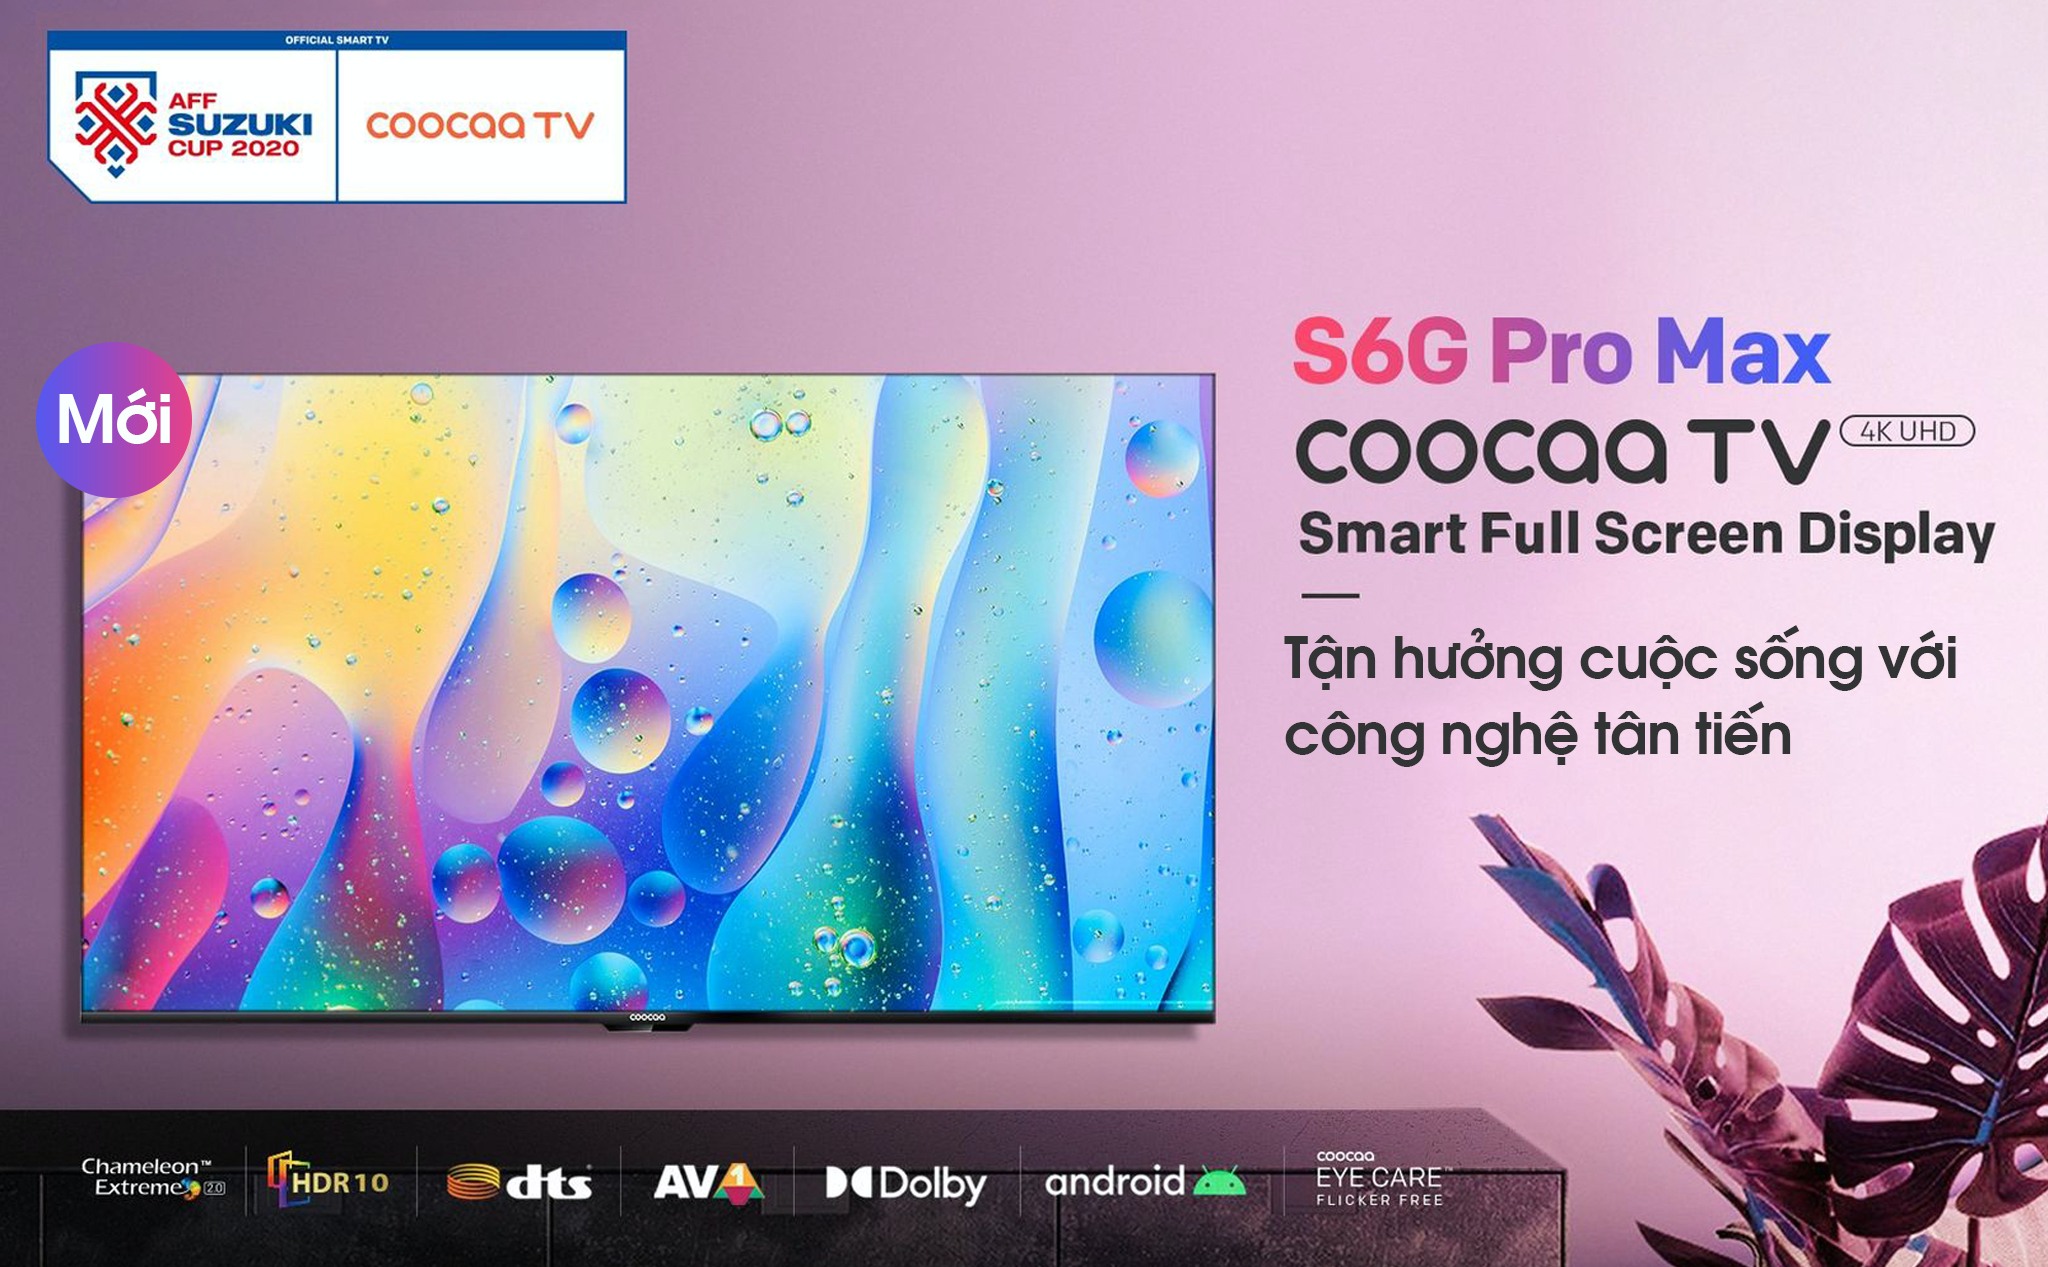 [QC] Giải mã sức hút siêu phẩm S6G Pro Max đến từ thương hiệu coocaa TV